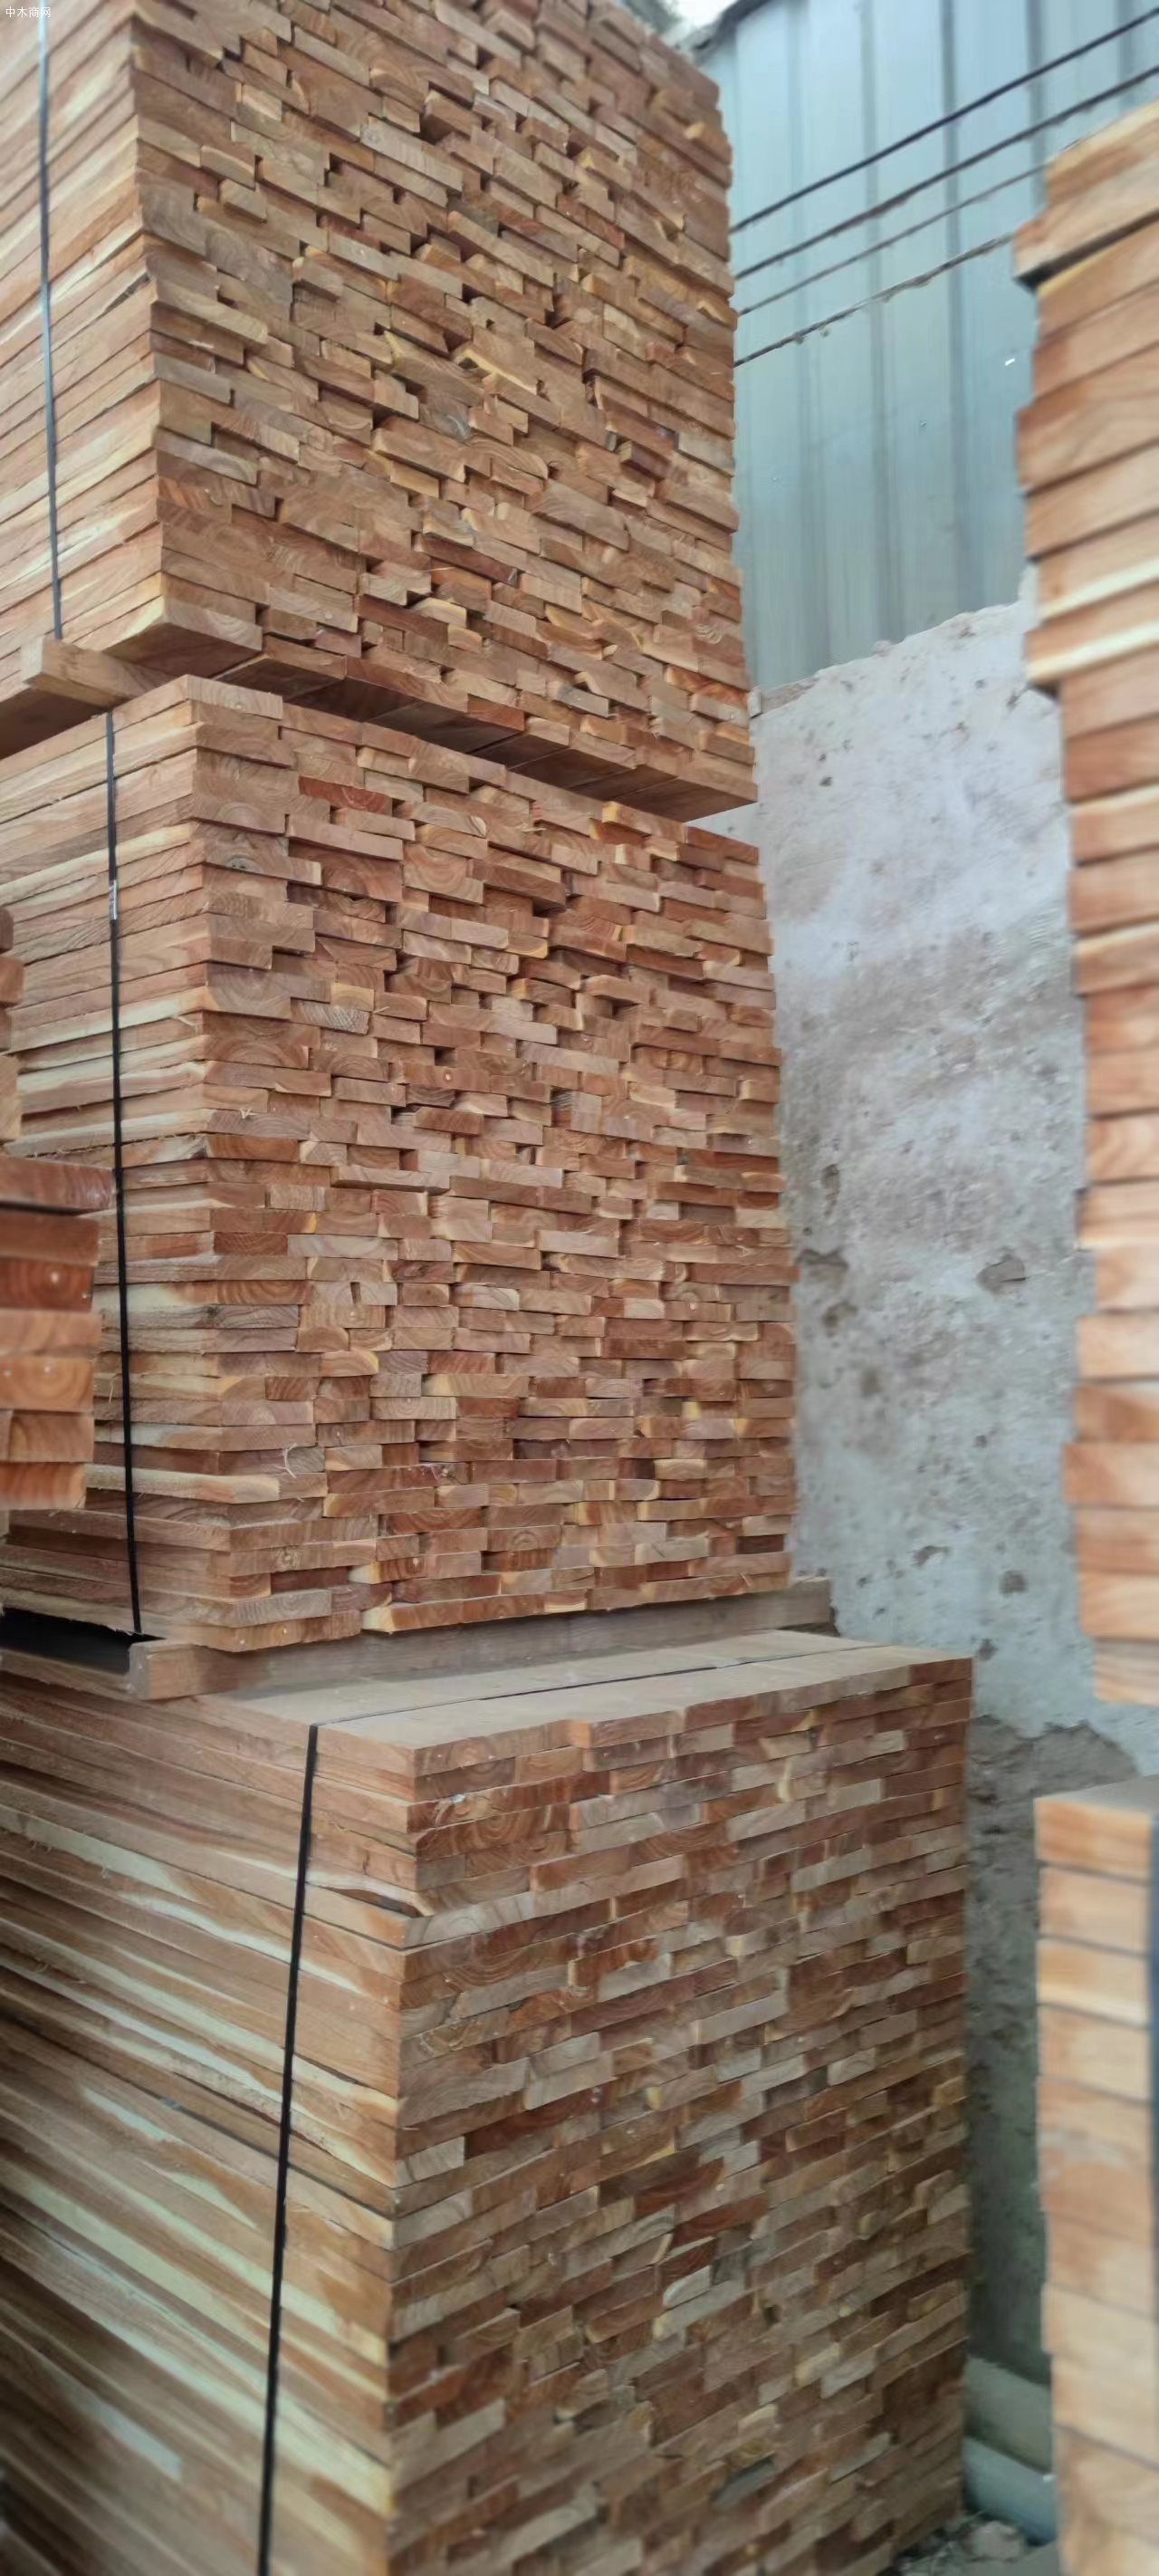 临颍优浩木业苦楝木烘干板材多少钱一吨批发